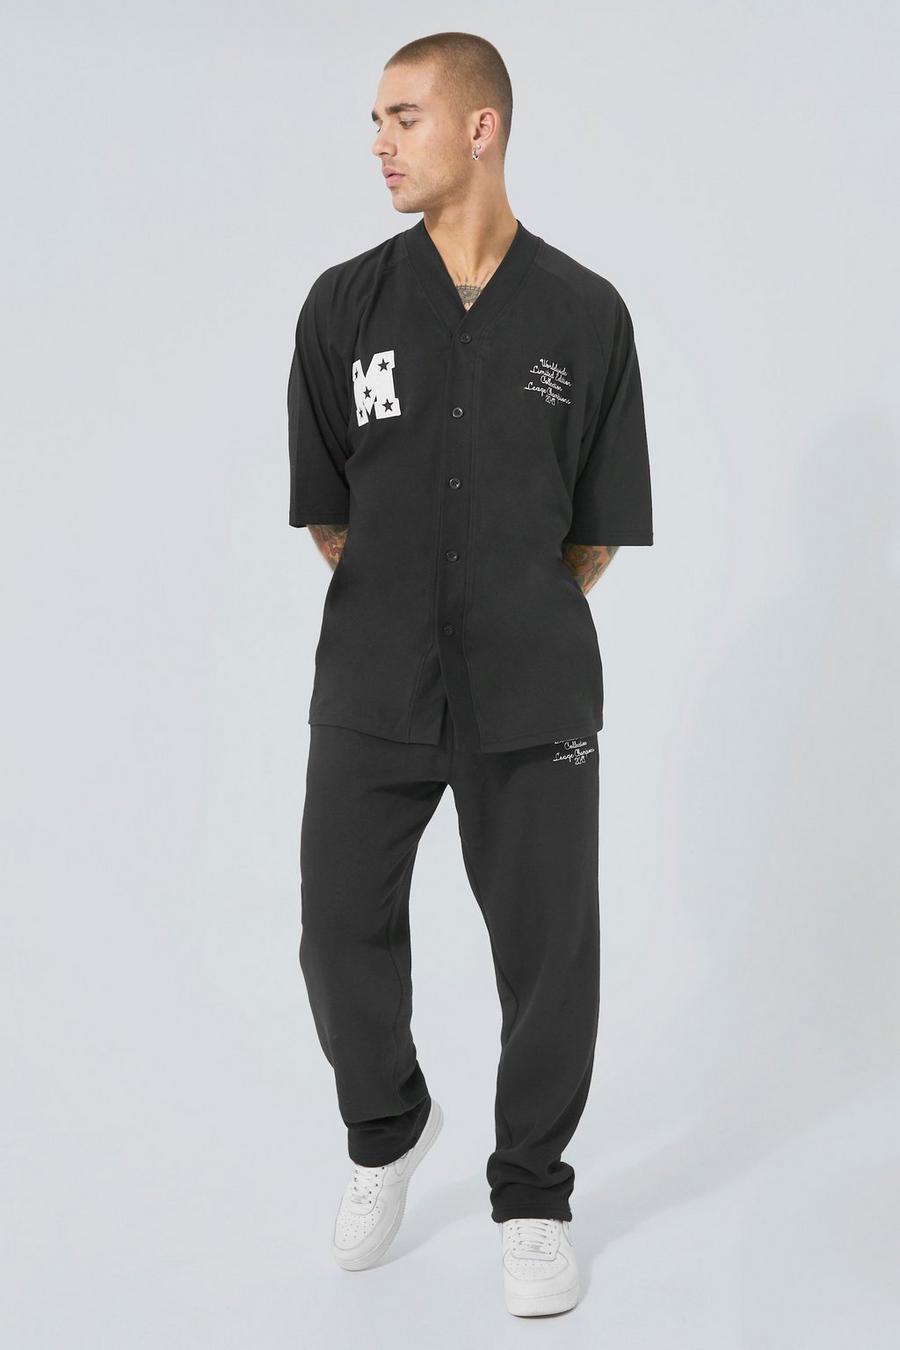 Black noir Baseball T-shirt And Jogger Set With Piping